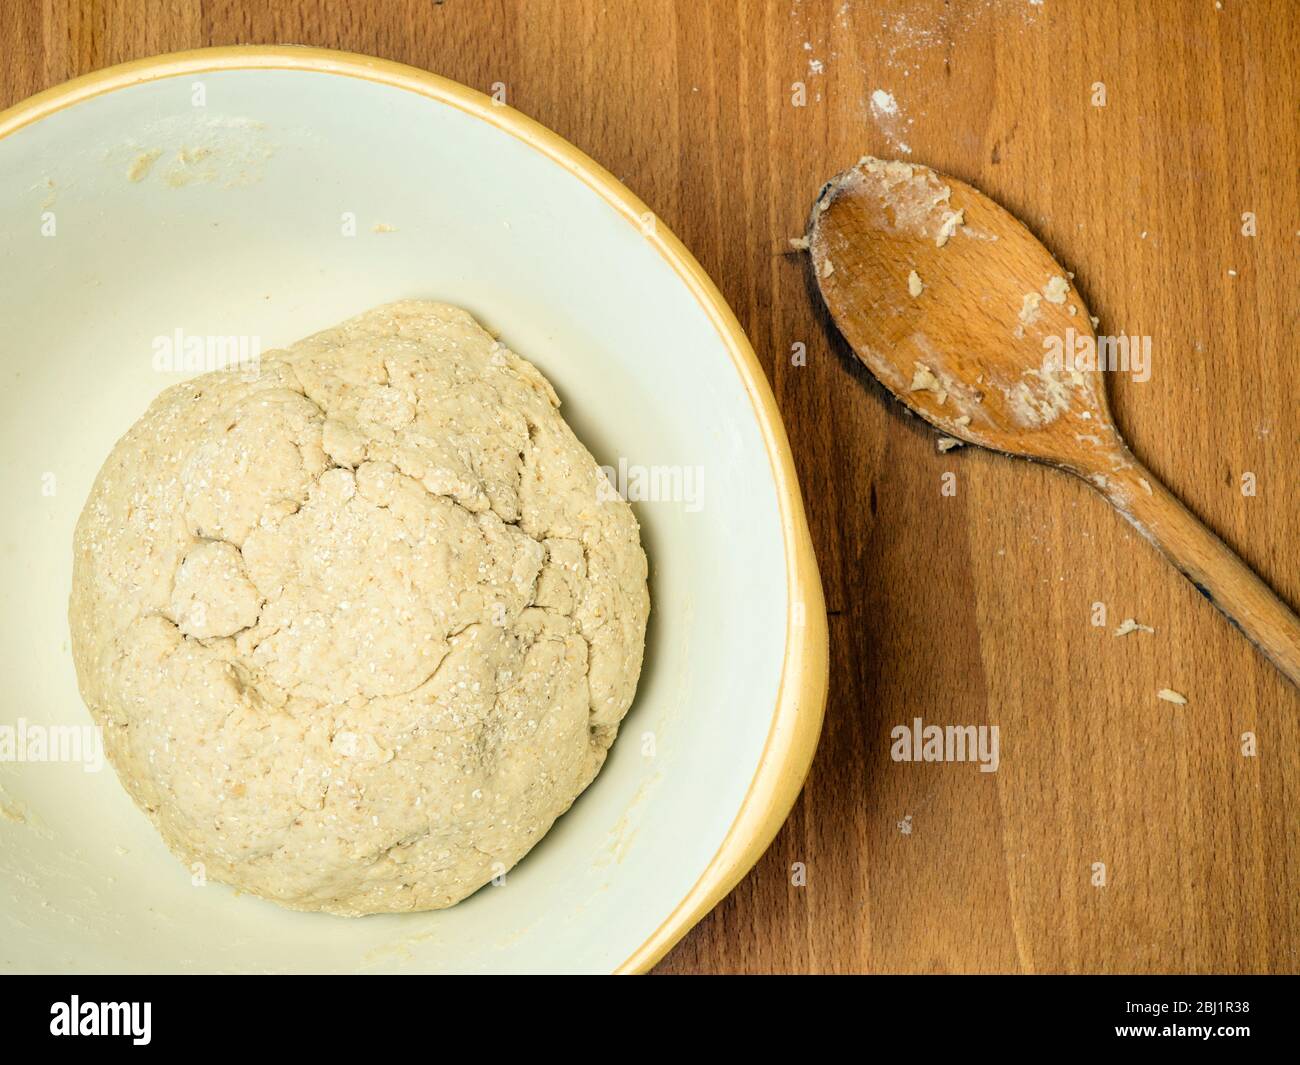 Masa de pan de avena hecha forma de harina de pan blanca fuerte con espuma de avena y avena enrollada en un cuenco para mezclar con una cuchara de madera Foto de stock